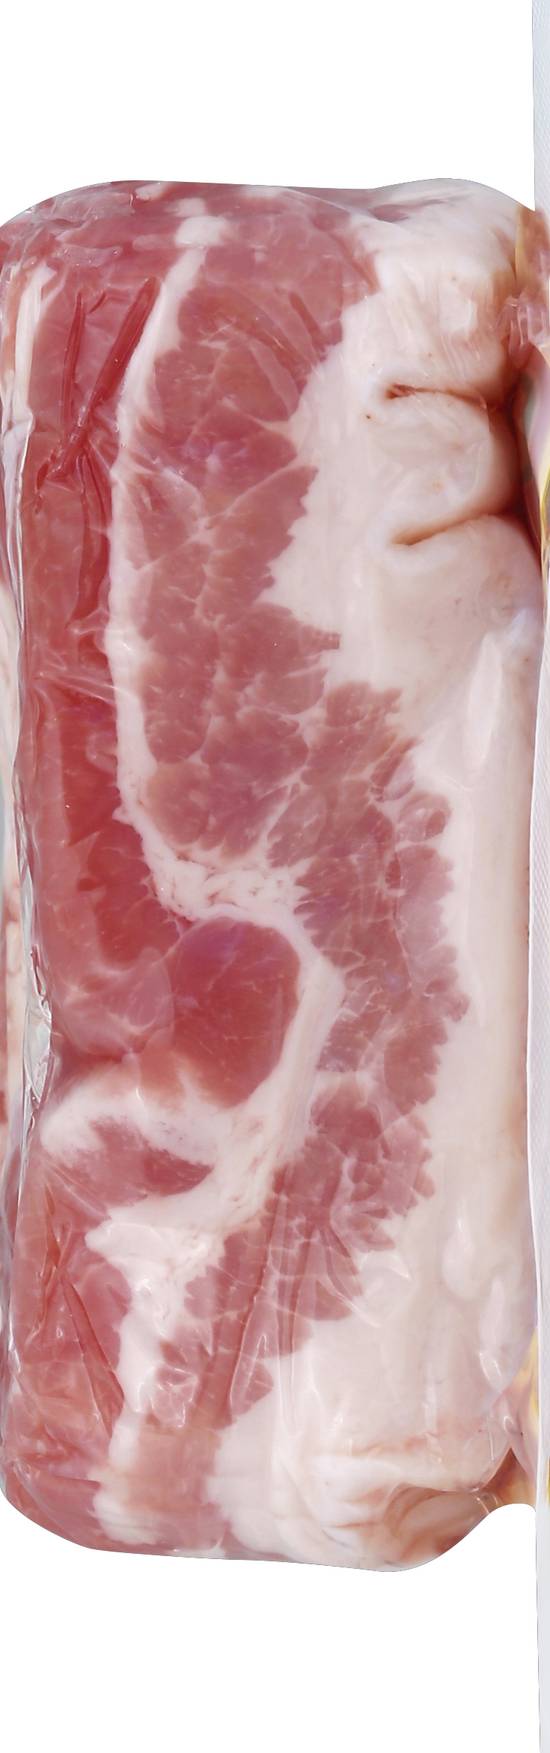 Hormel Cured Sliced Salt Pork